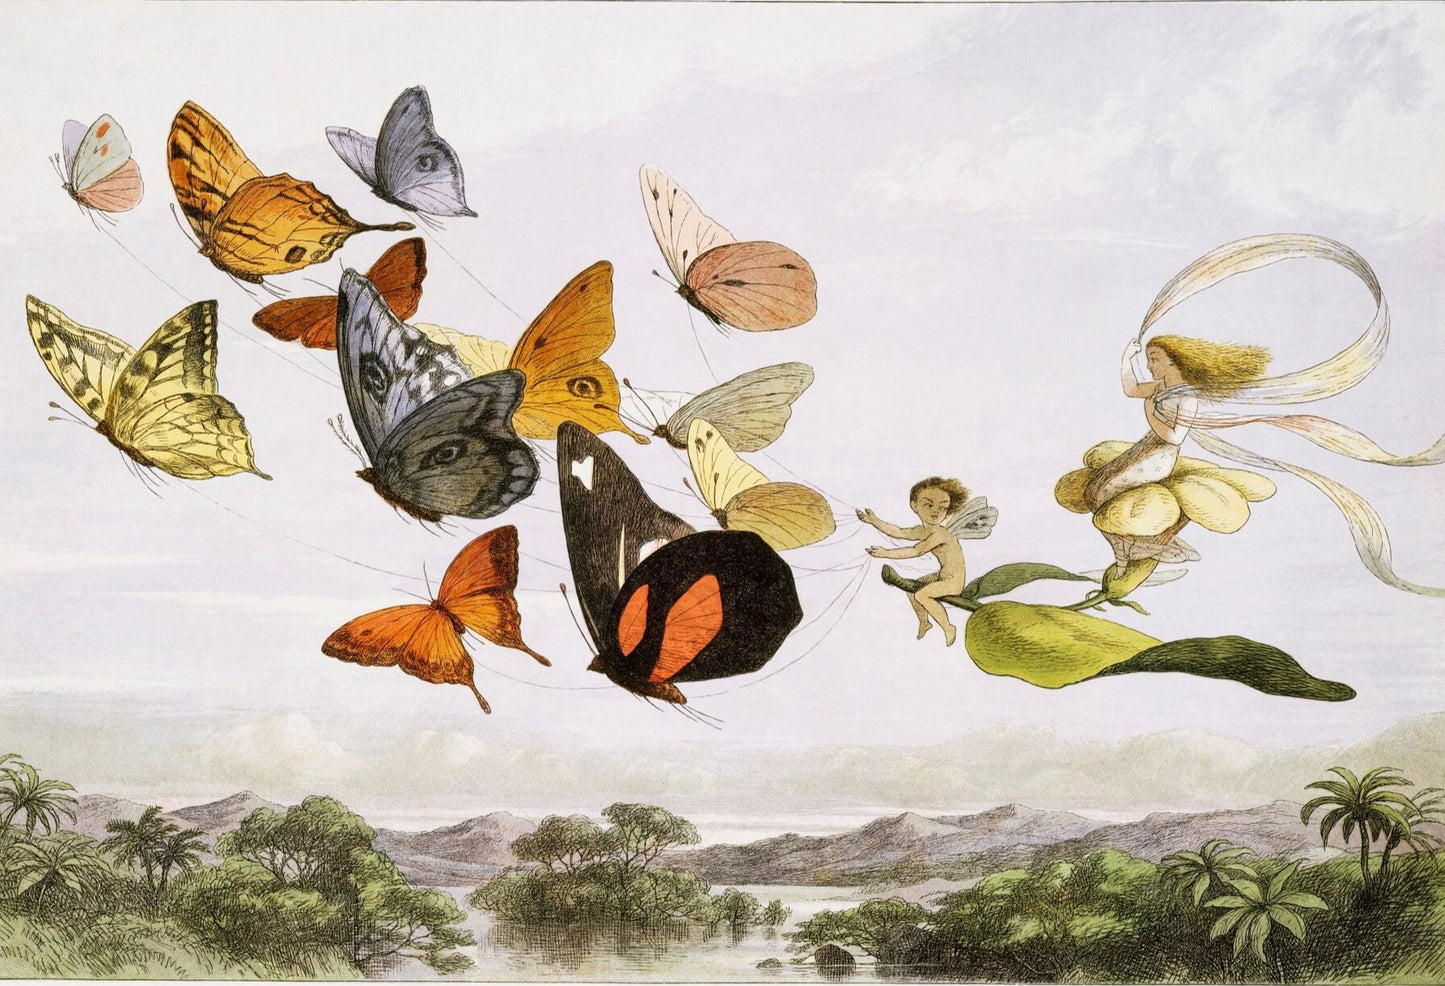 The Queen of Butterflies Mural Wallpaper (SqM)